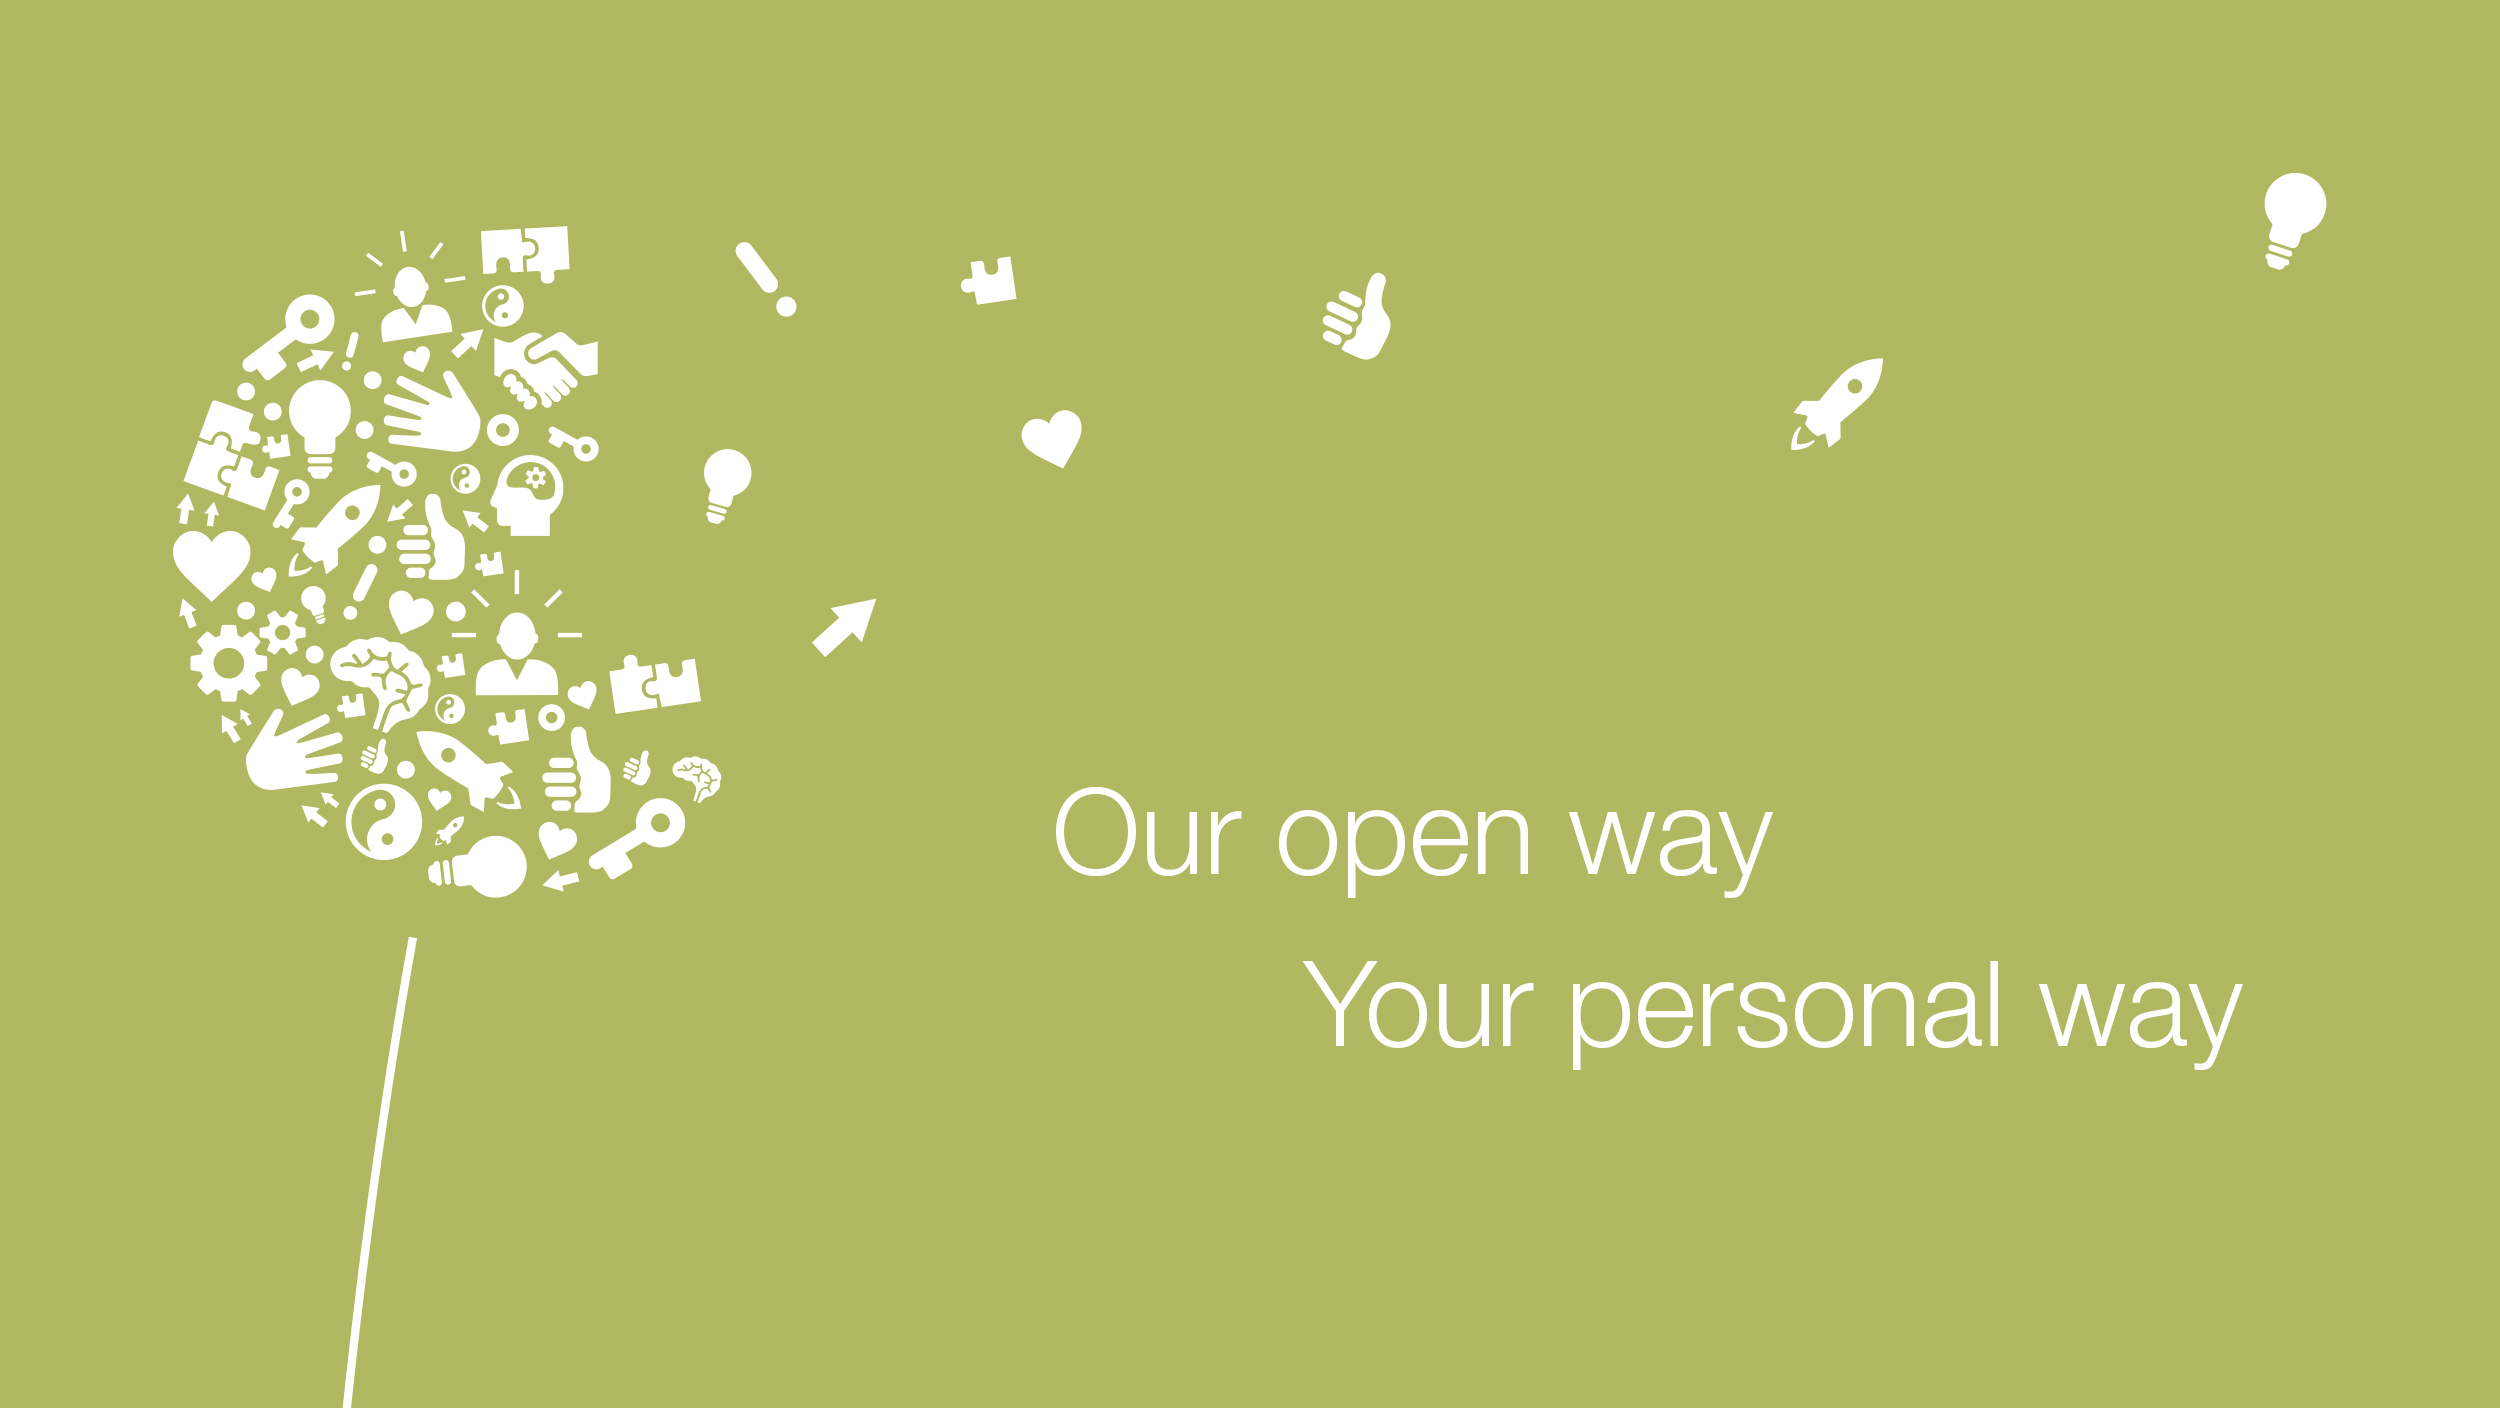 Mælkebøtte lavet af forskellige ikoner ved siden af sloganet: Vores åbne døre, dine perspektiver